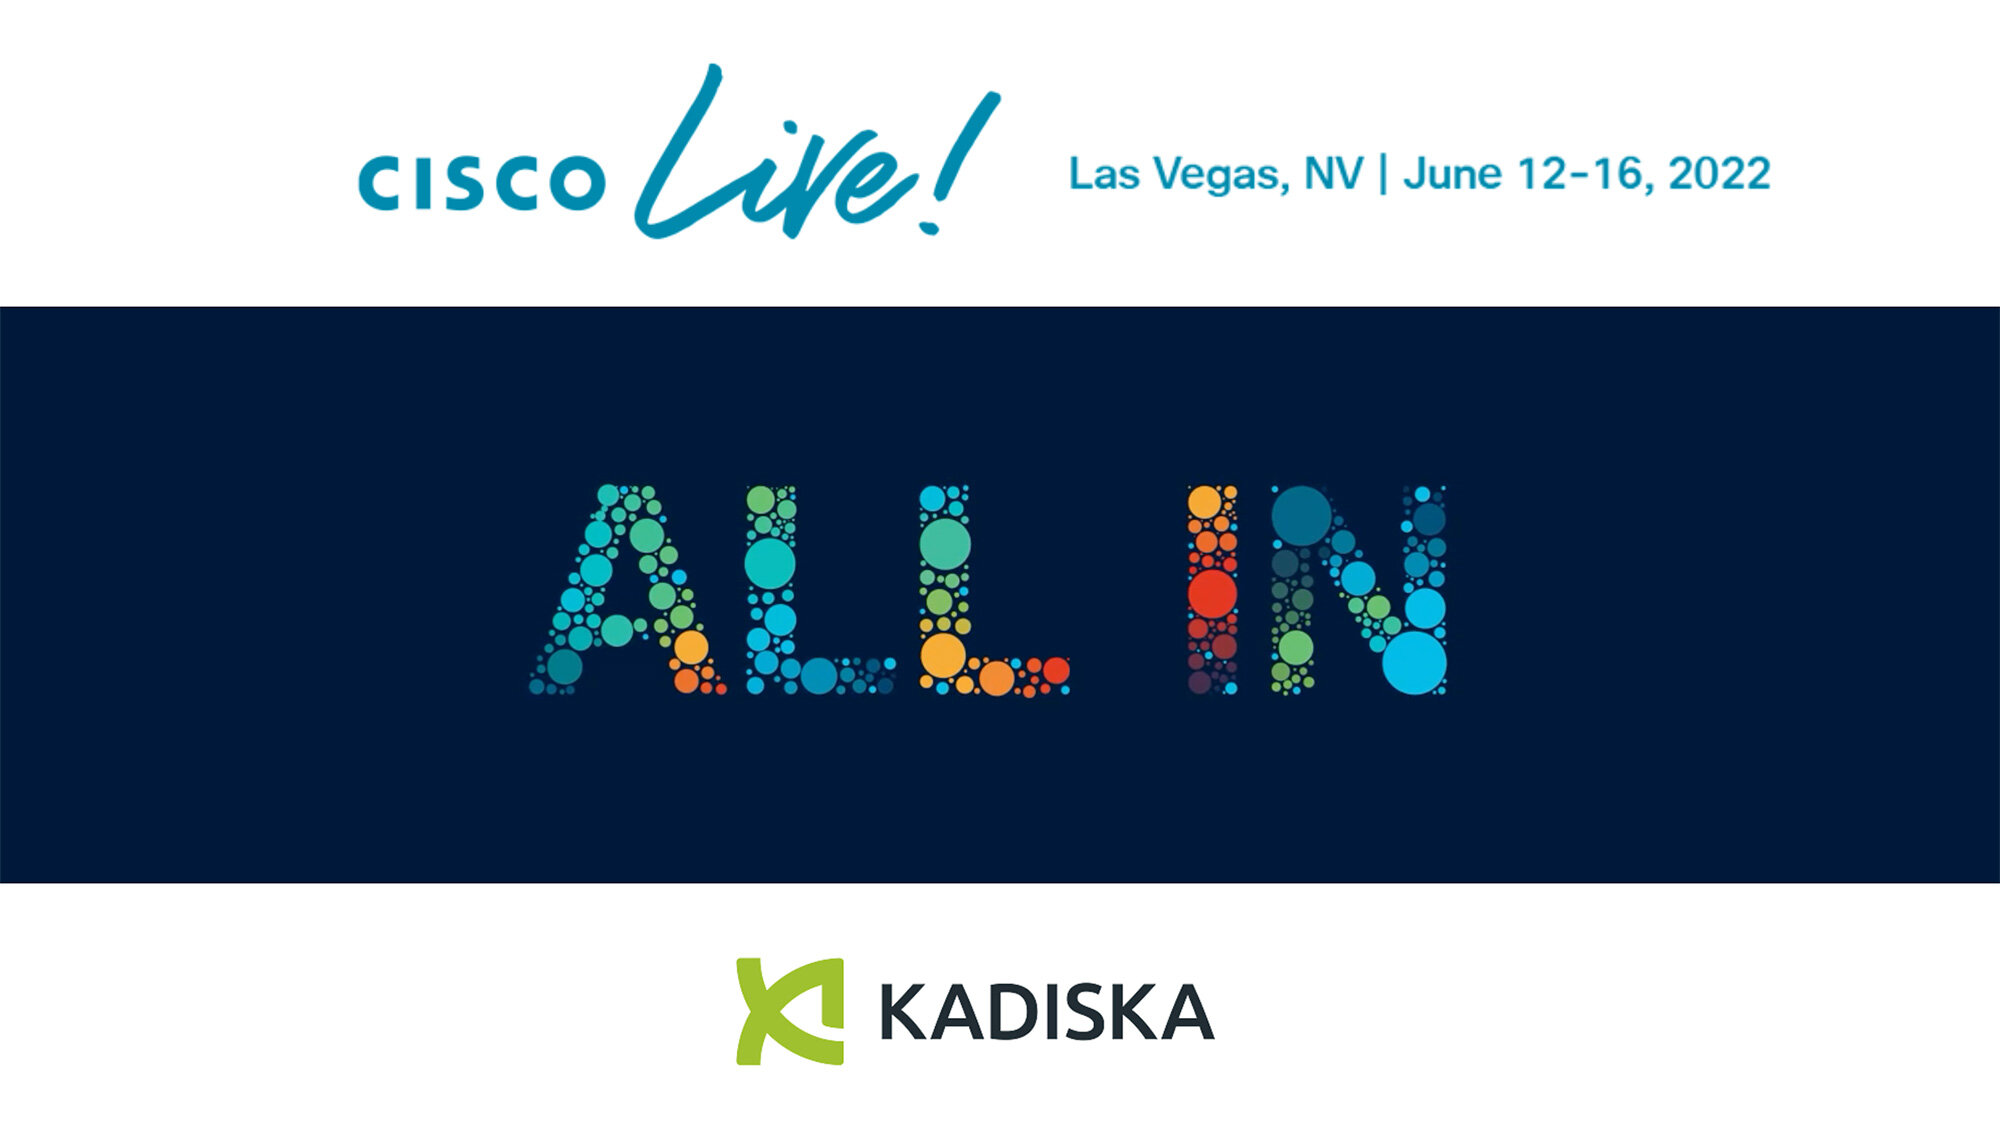 2022-06 - Kadiska at Cisco Live 2022, Las Vegas